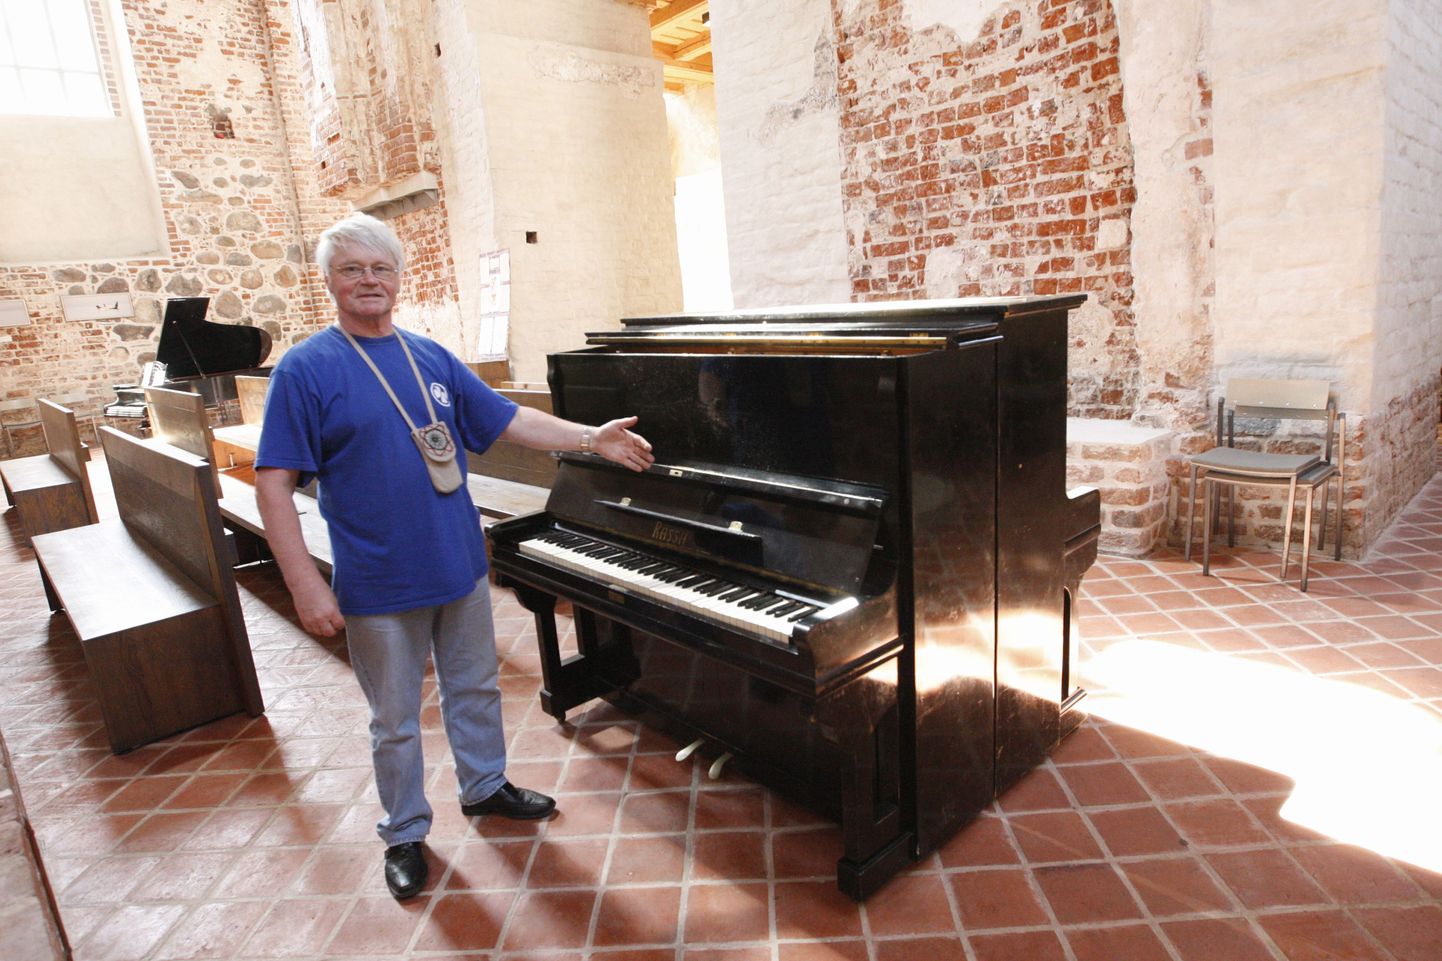 Alo Põldmäe on korraldanud arvukalt näitusi vanadest eesti klaveritest ja pianiinodest